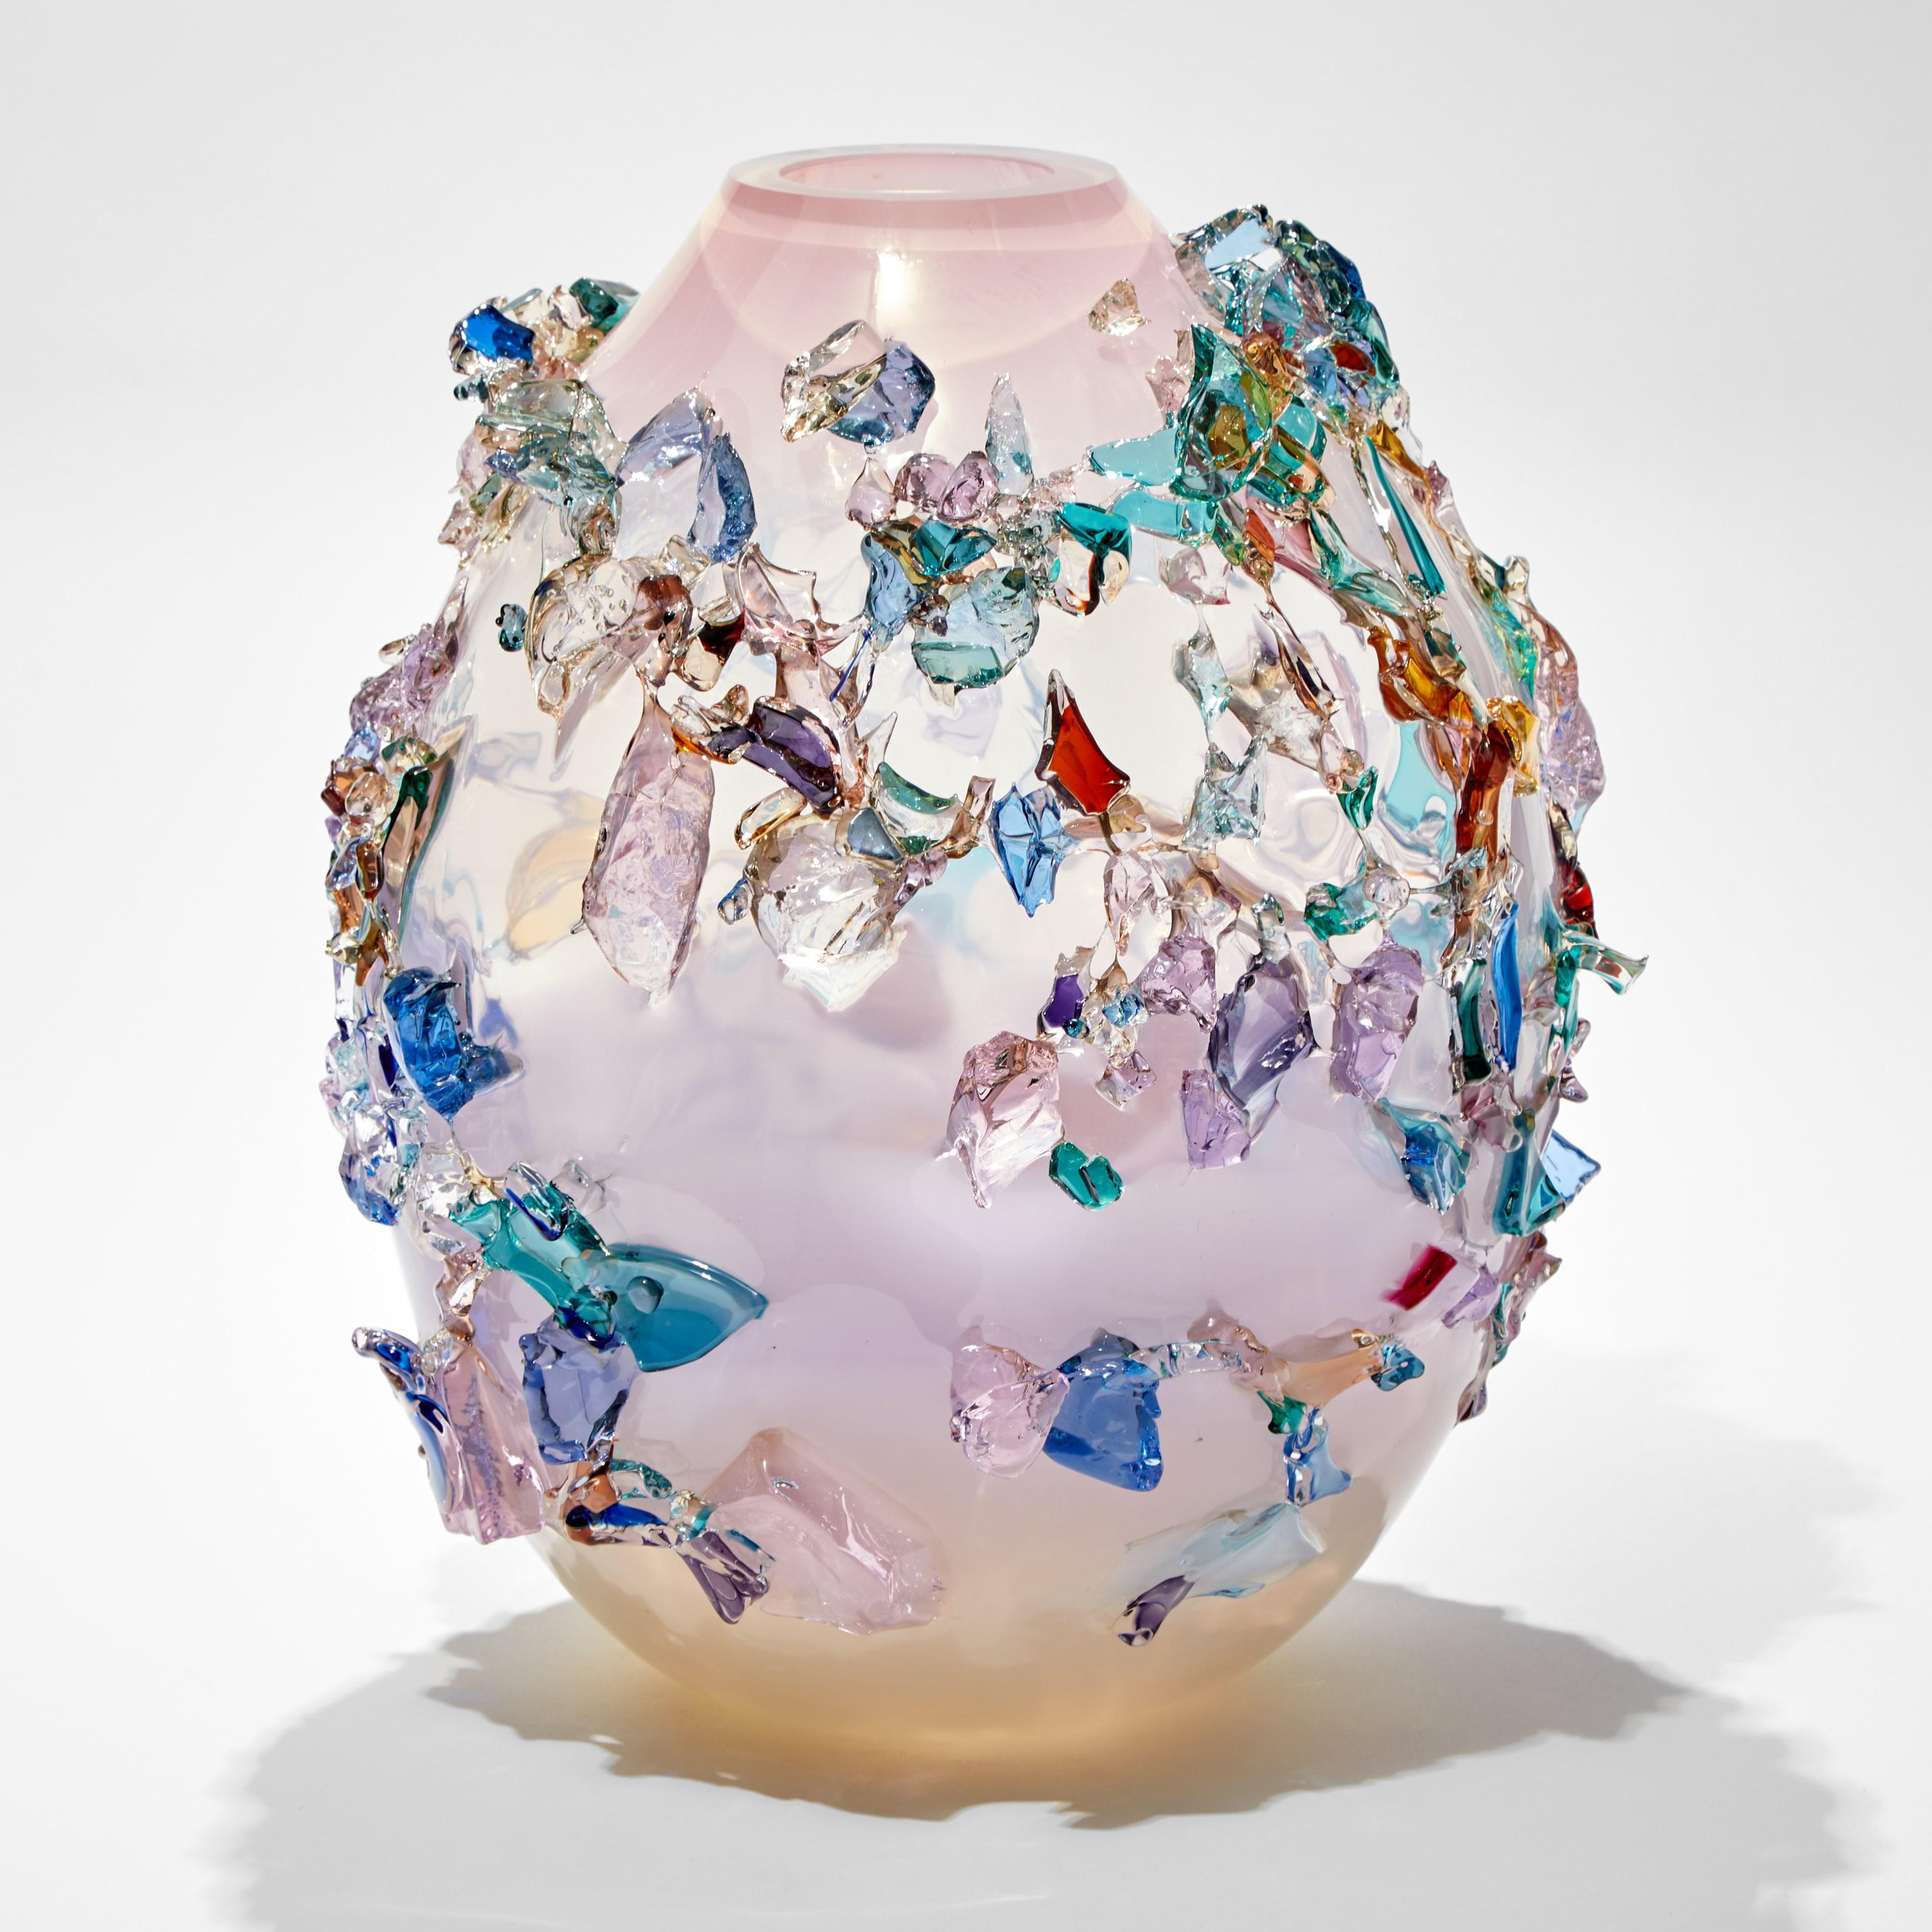 Organic Modern Sakura TRP21010, a Glass Vase in Pink with Mixed Colors by Maarten Vrolijk